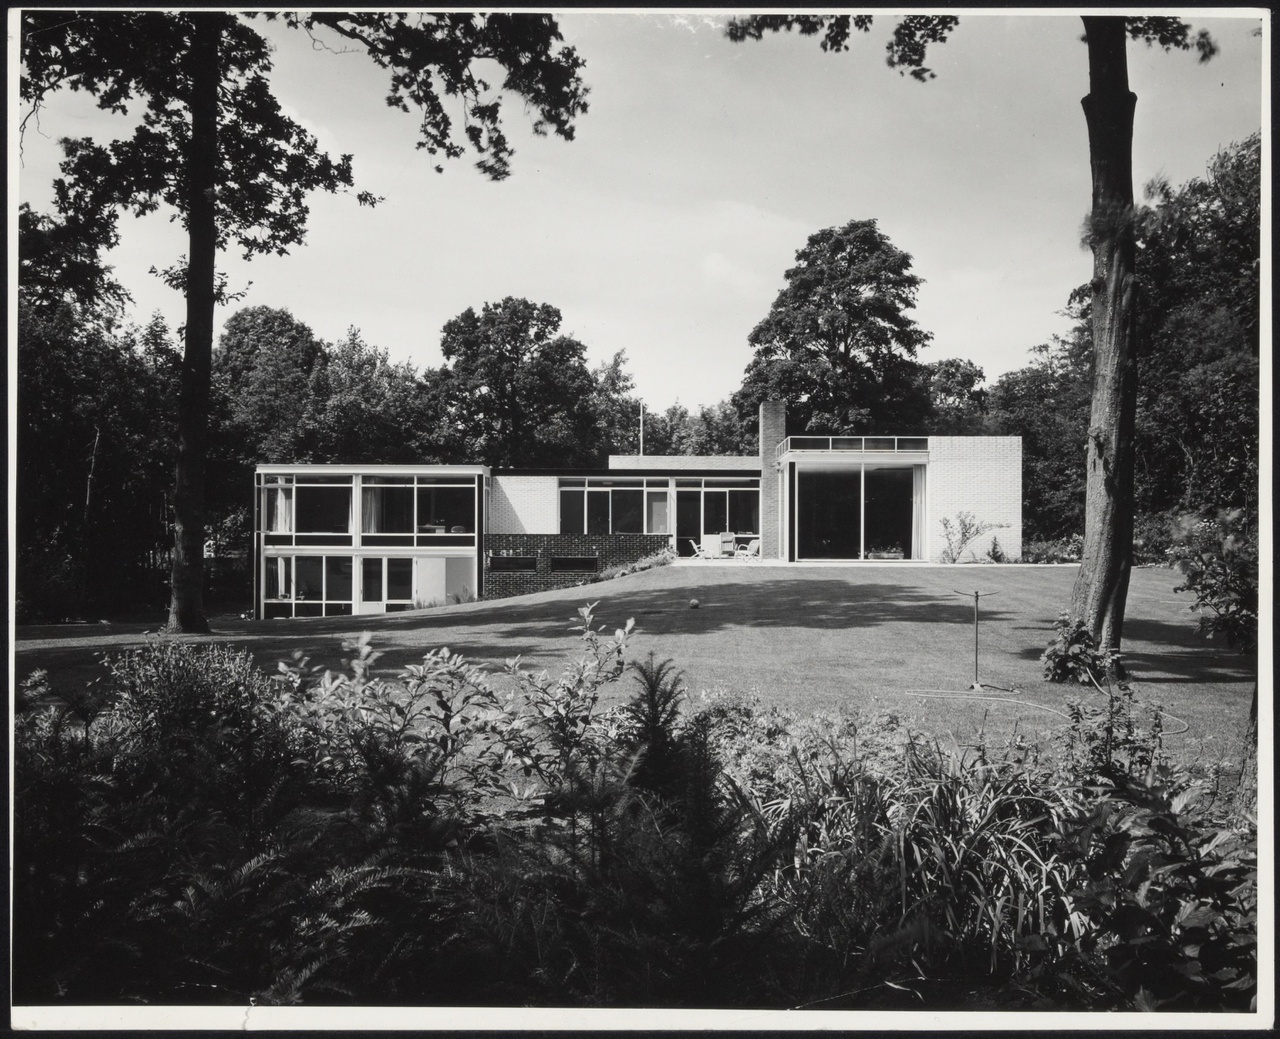 Afbeelding van woning Van Dantzig, Santpoort, 1961, tuinzijde, recht aanzicht